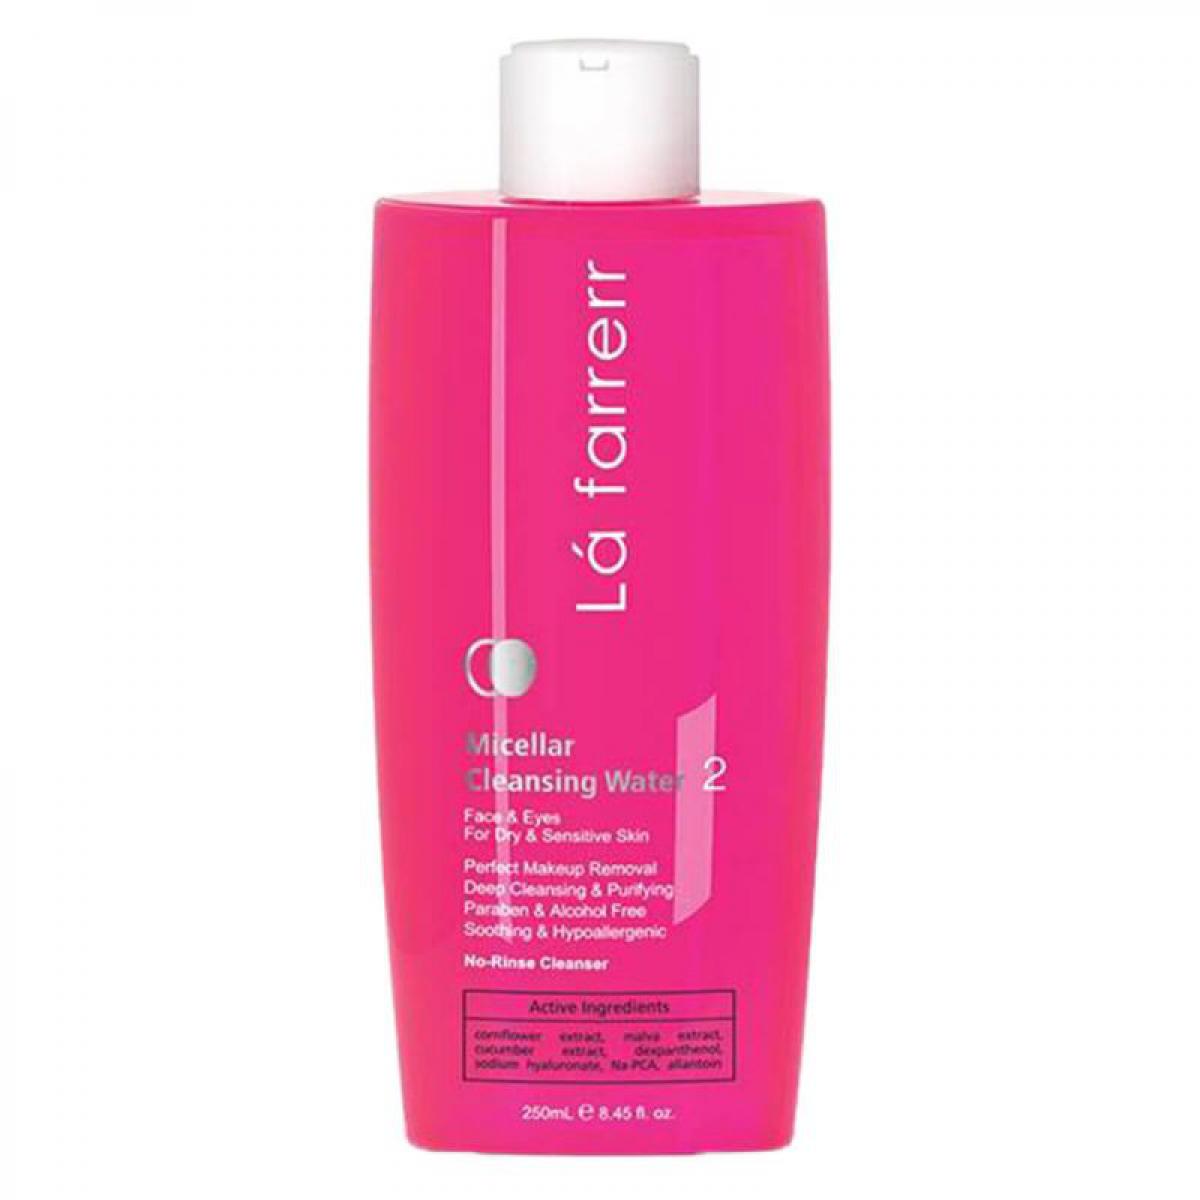 محلول پاک کننده آرایش مناسب پوست حساس و خشک  - Face Makeup Remover For Dry and Sensitive Skins 250 ml